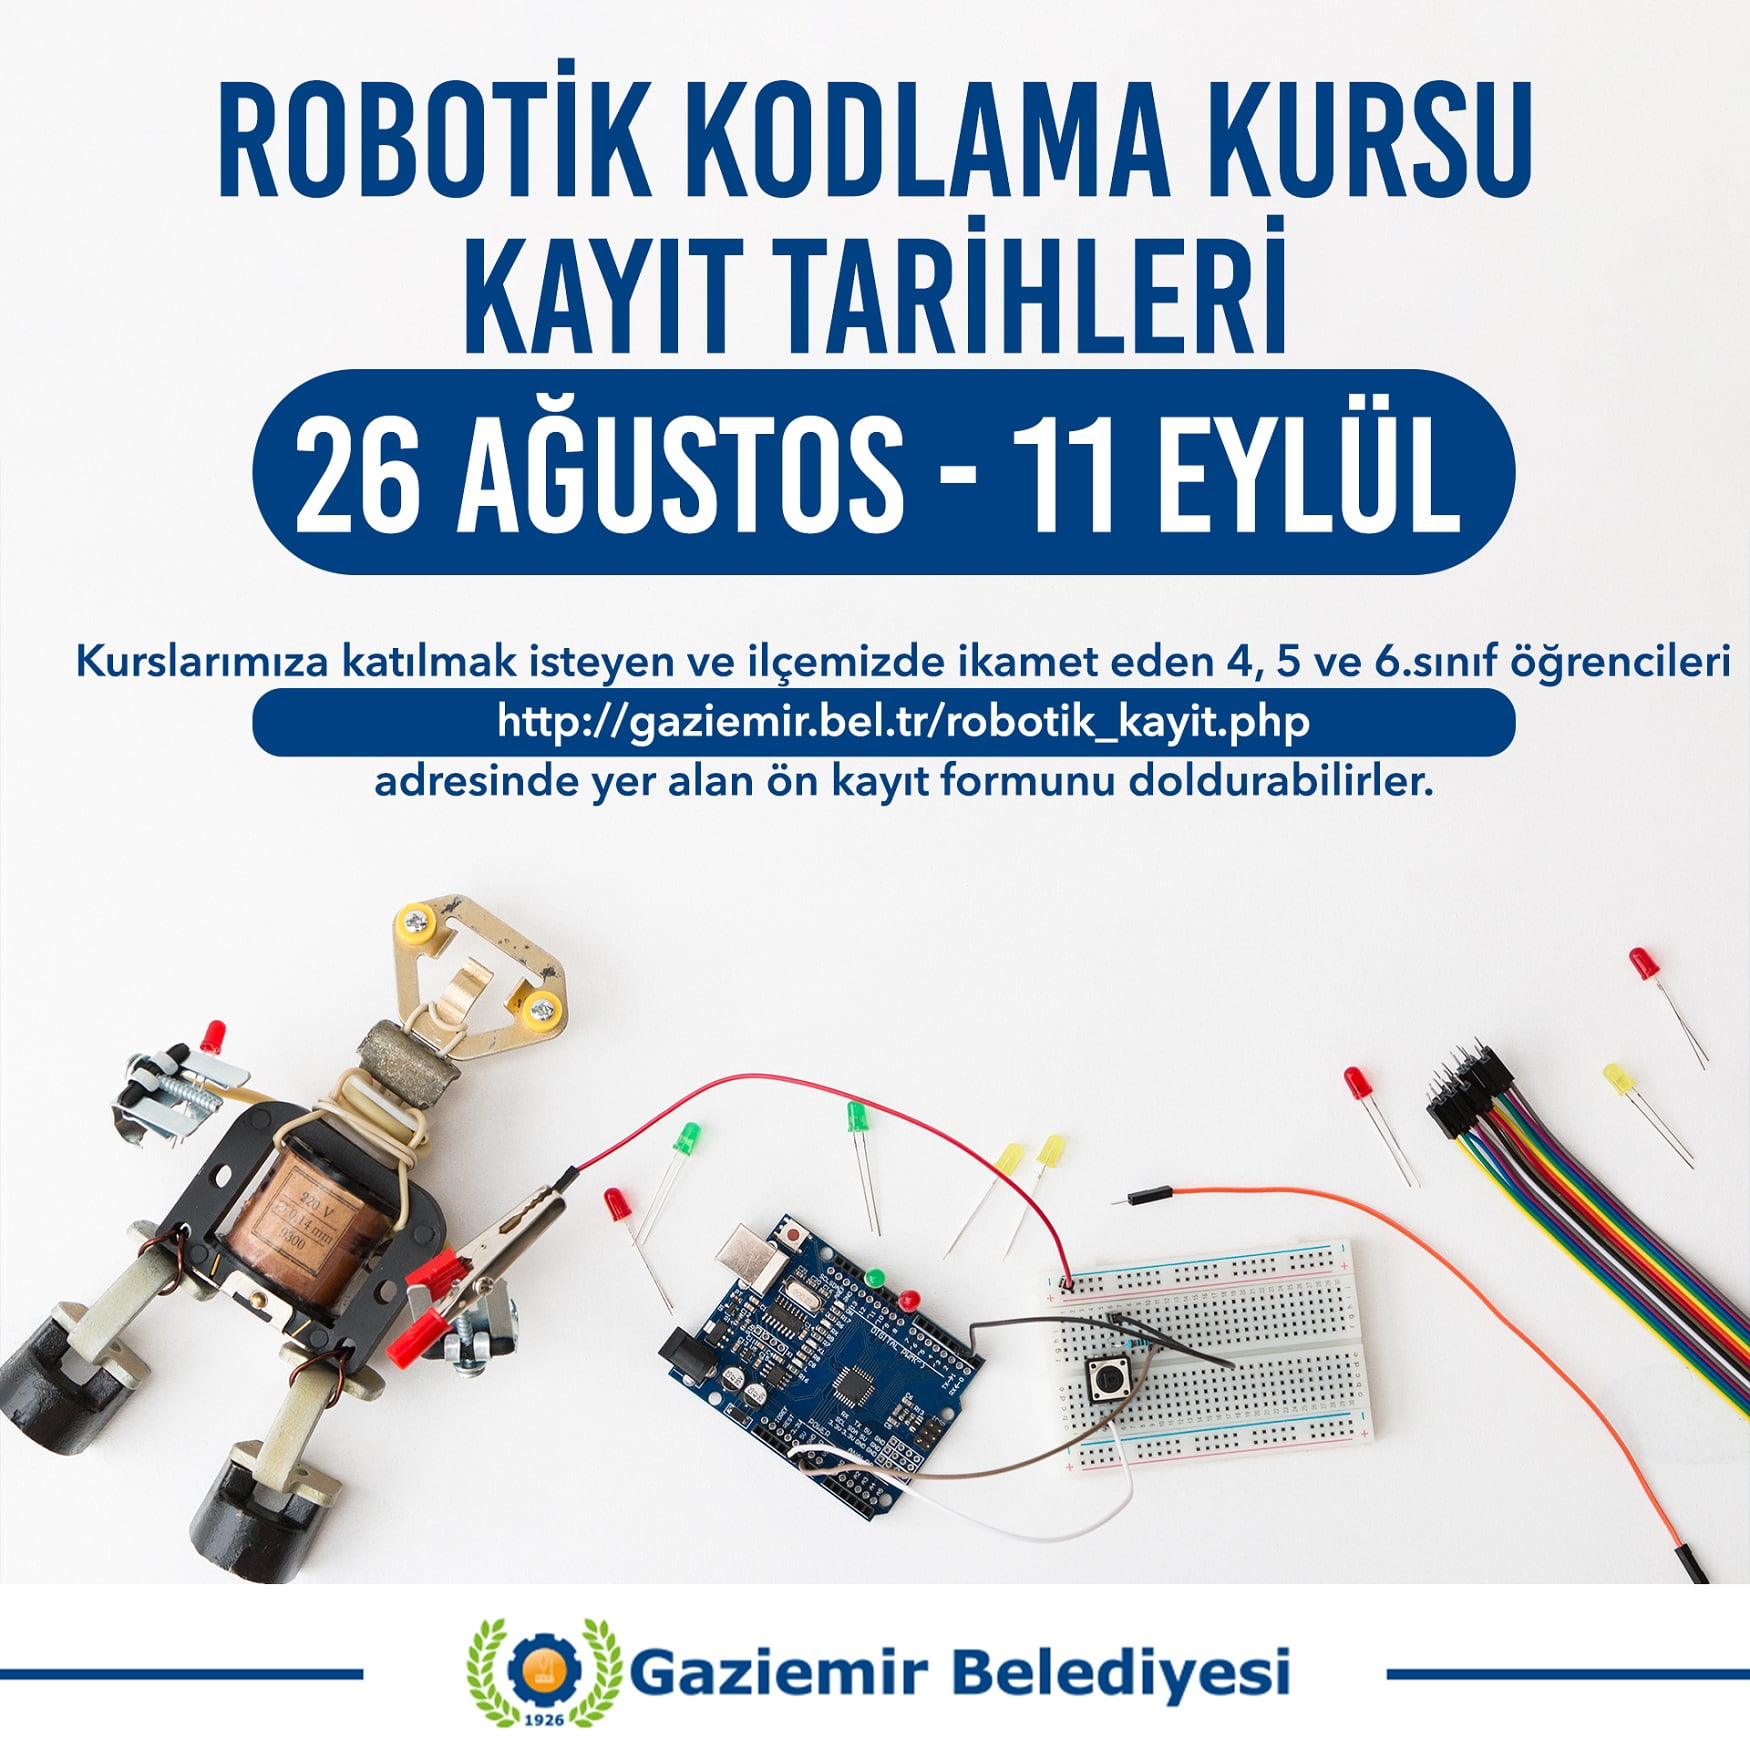 Gaziemir’in Robotik Kodlama Kursunda kayıt zamanı